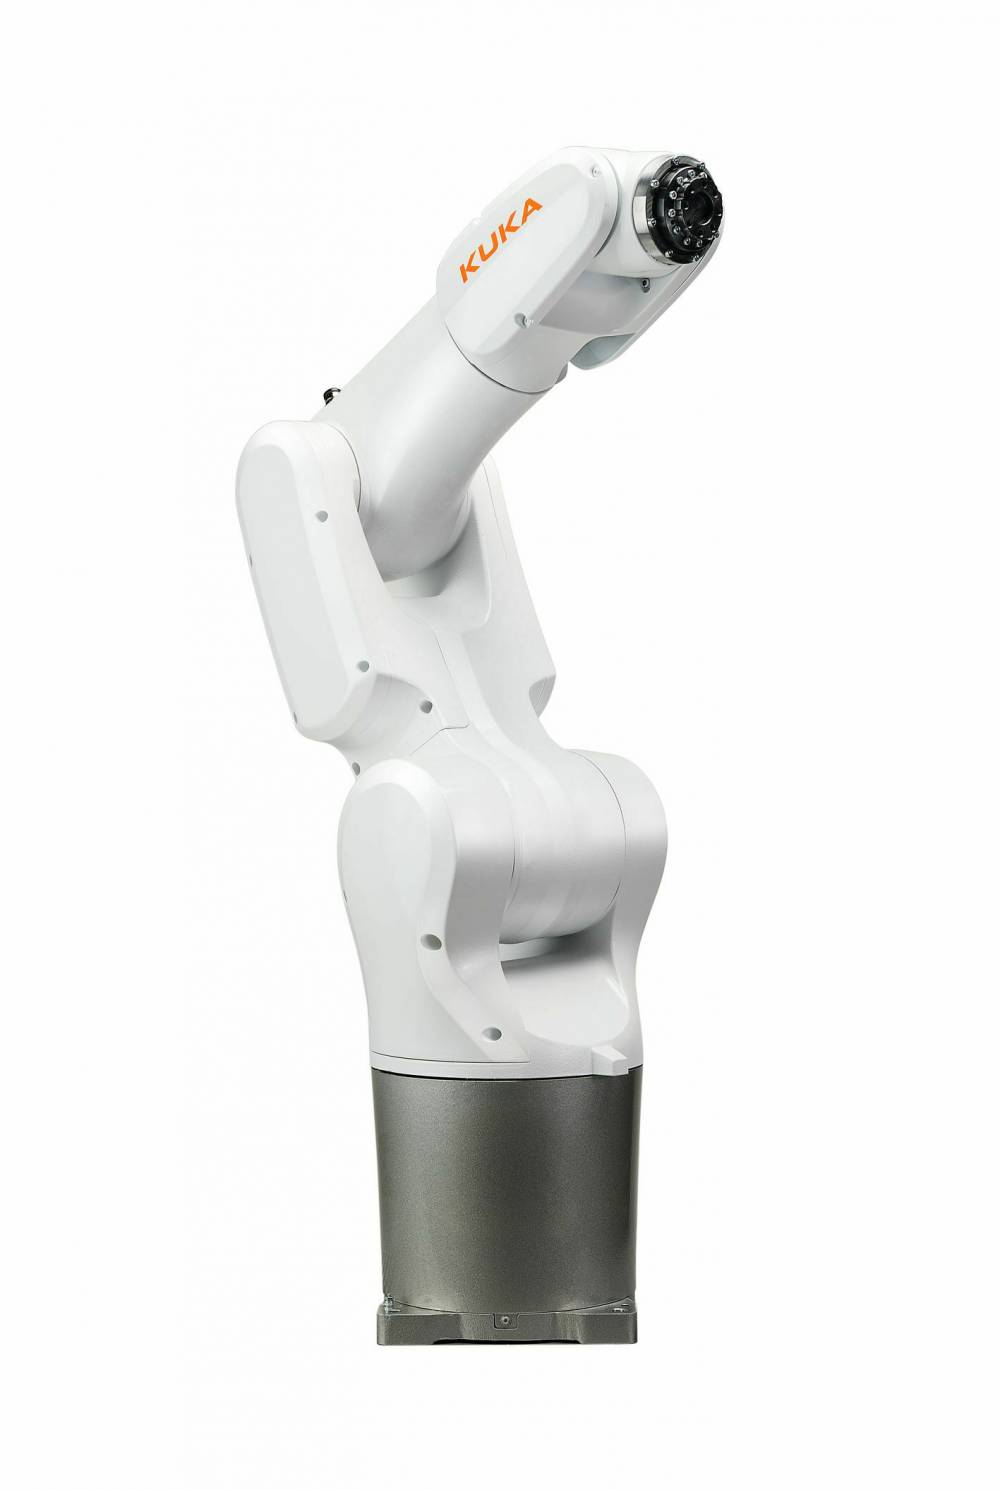 KUKA KR 4 R600 工业机器人 天津库卡机器人代理 天津kuka机器人代理